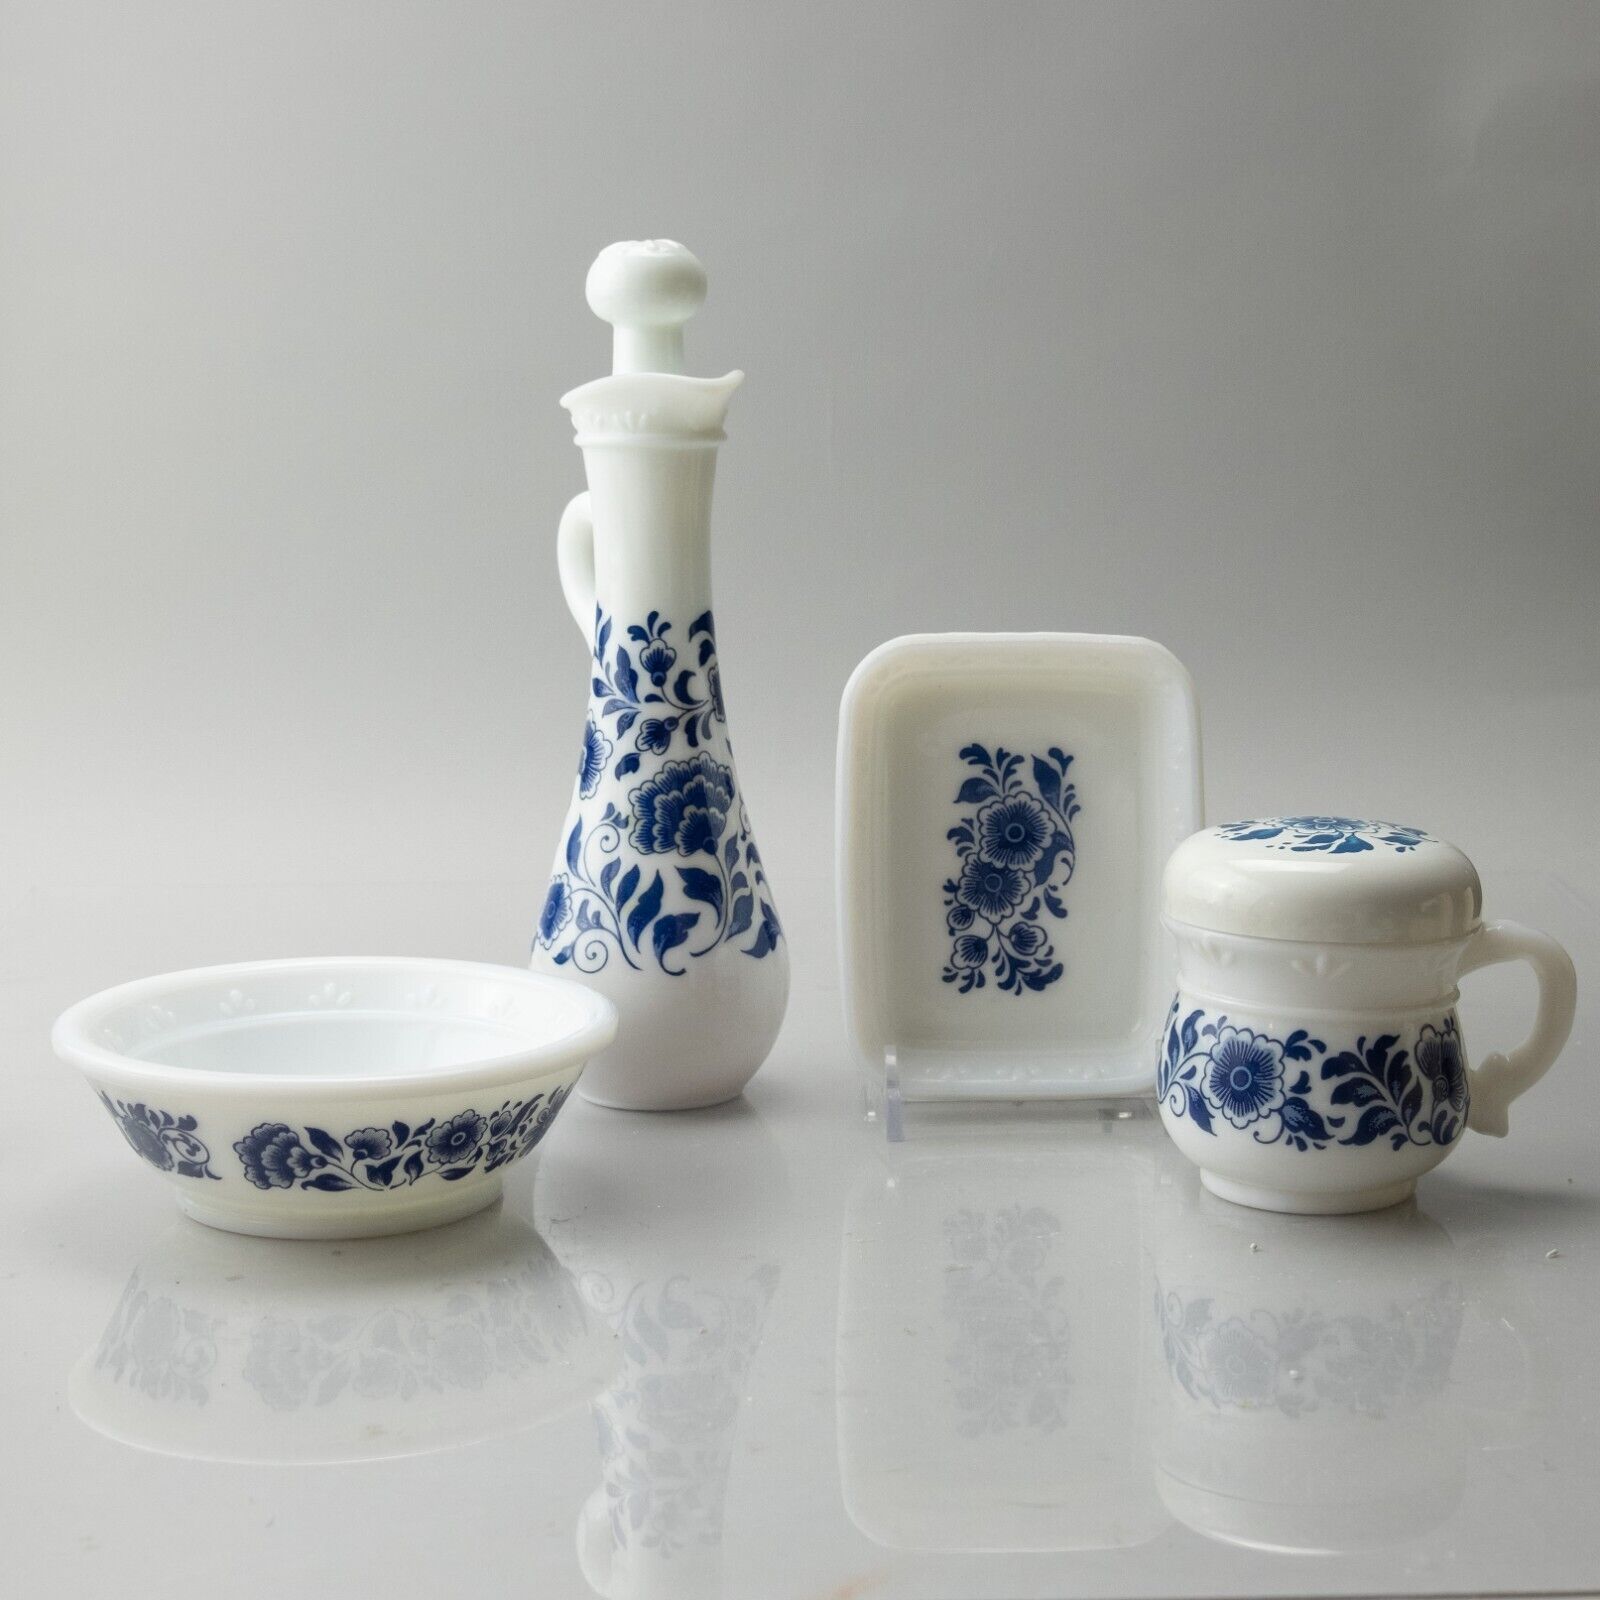 Vintage Avon Delft Blue Milk Glass Vanity Set Darling floral pattern